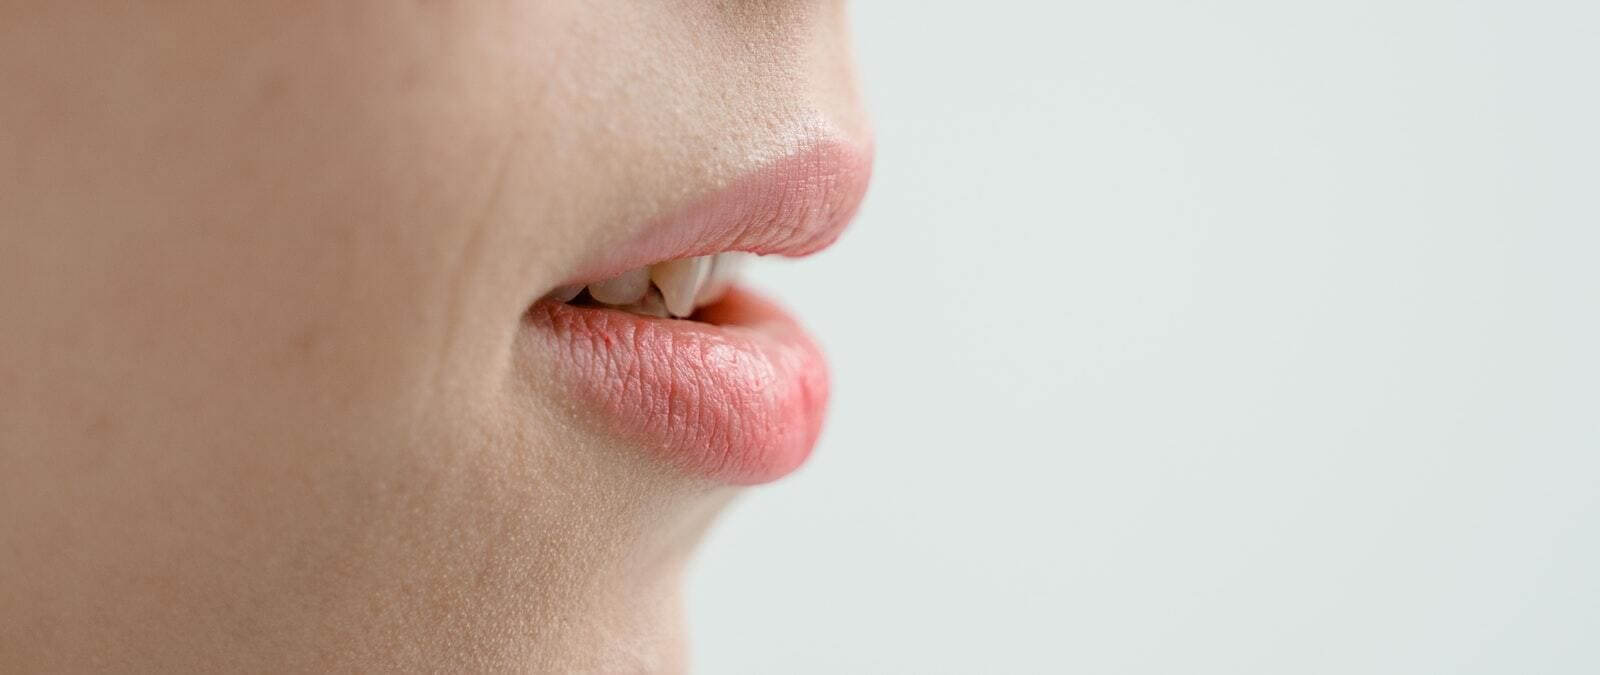 Lo que debería saber sobre el herpes labial